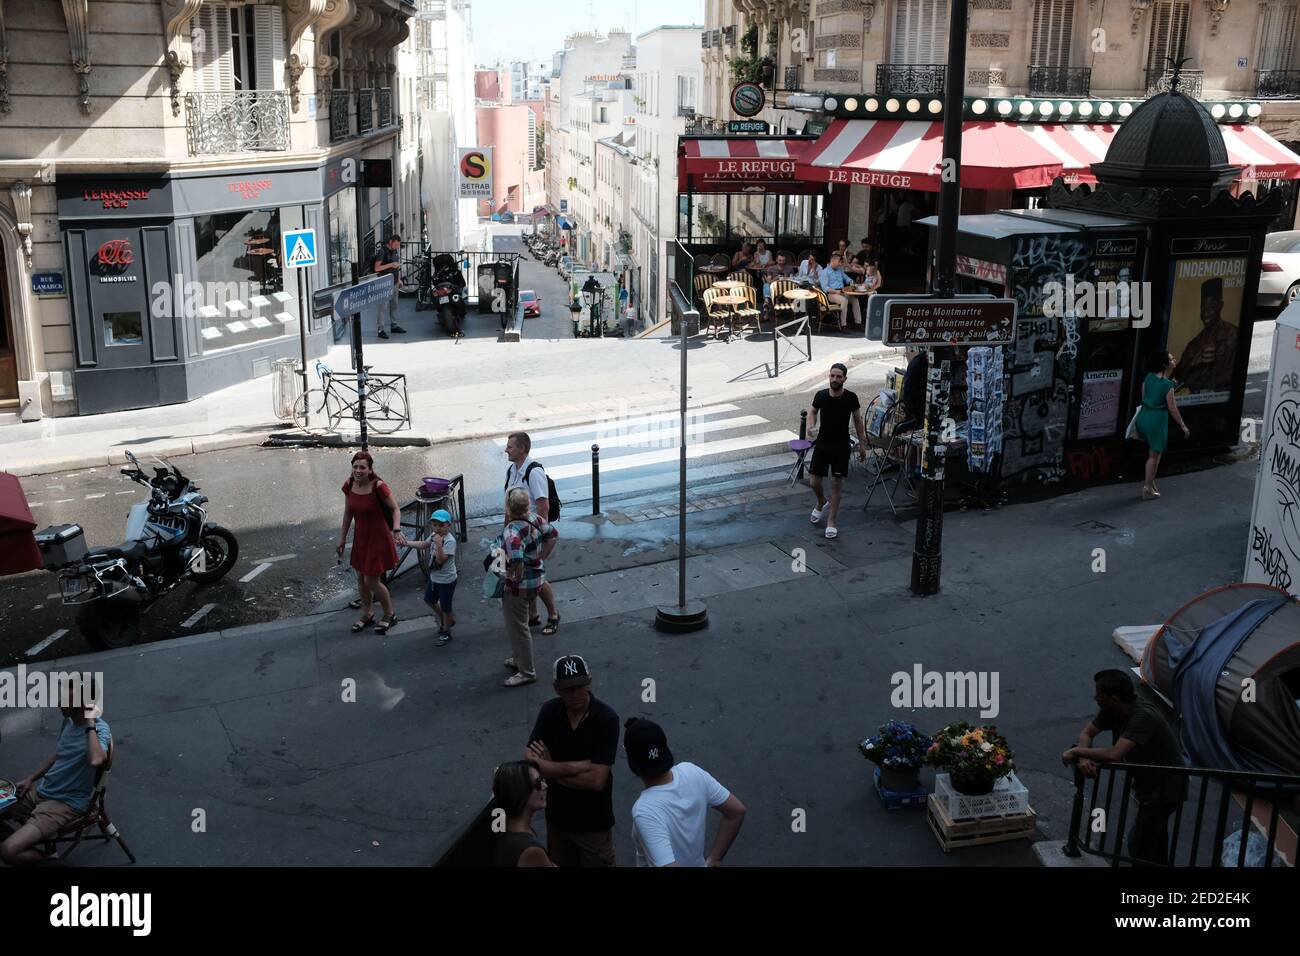 MONTMARTRE, PARIS - 29th. JUNI 2019: Eine geschäftige Pariser Straße in der Rue Lamarck Szene im 18th Arrondissement. Im Café La Refuge sitzen Einheimische in der Sonne. Stockfoto